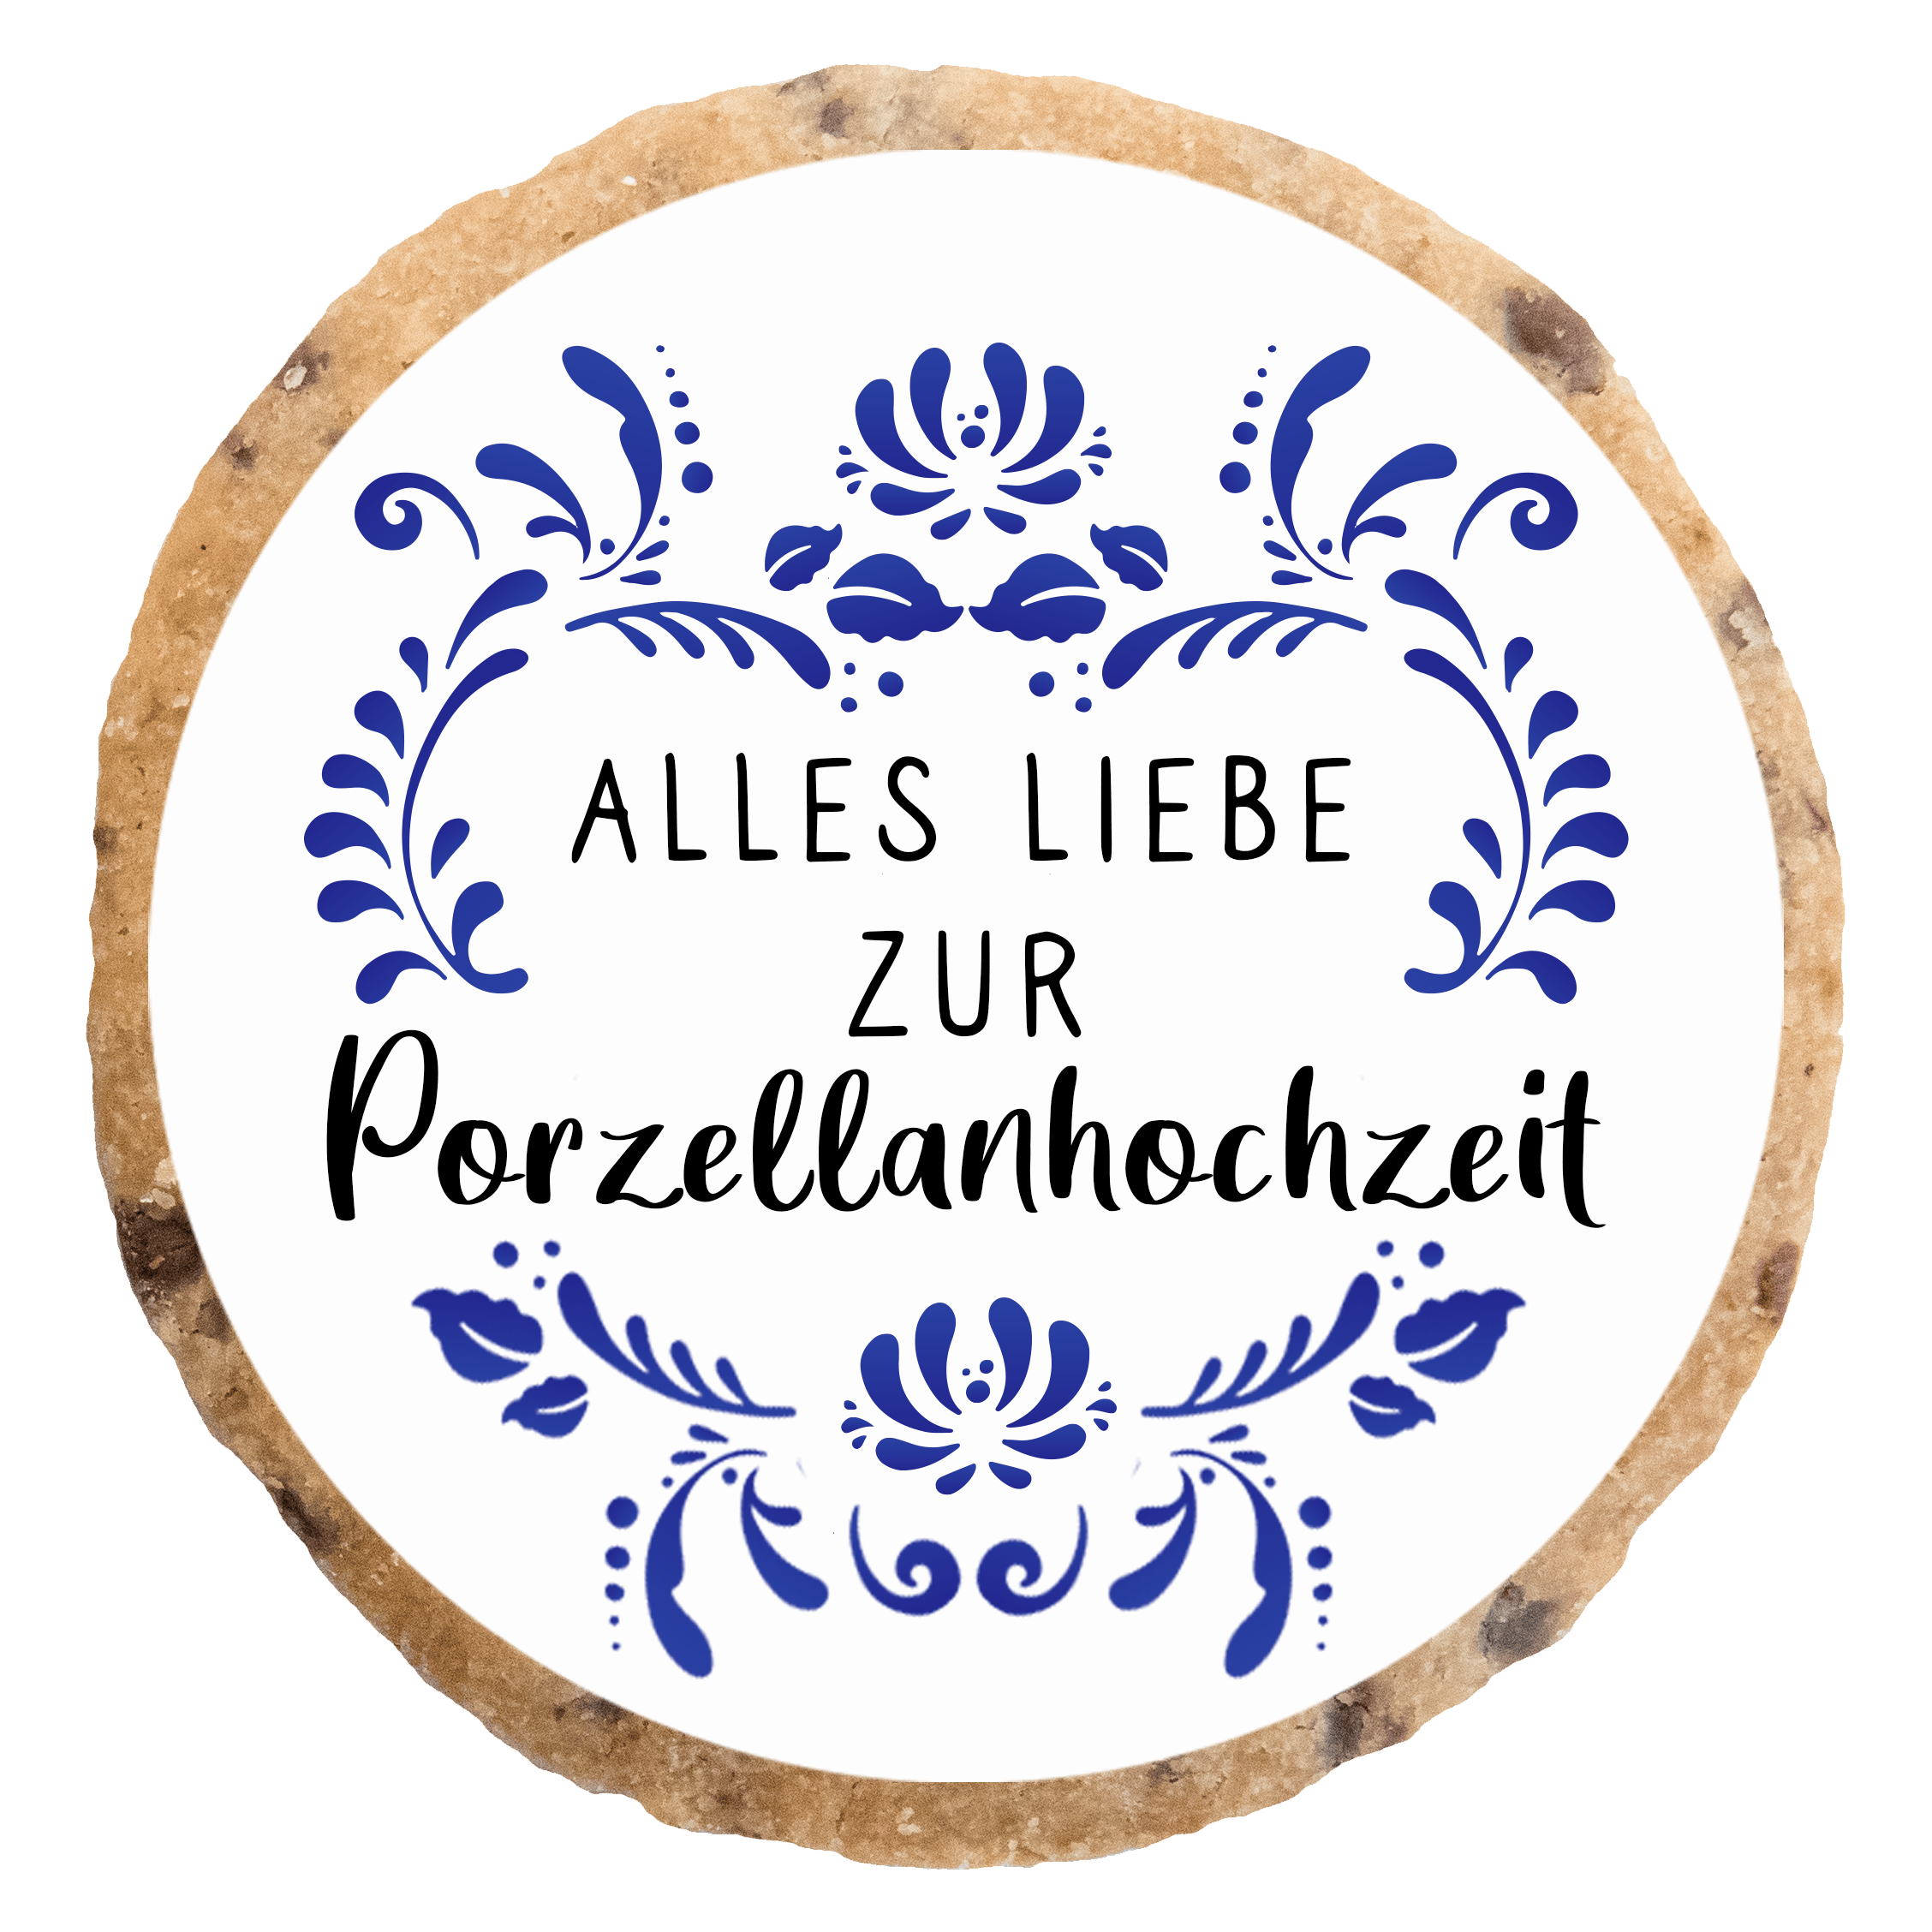 "Porzellanhochzeit" MotivKEKS